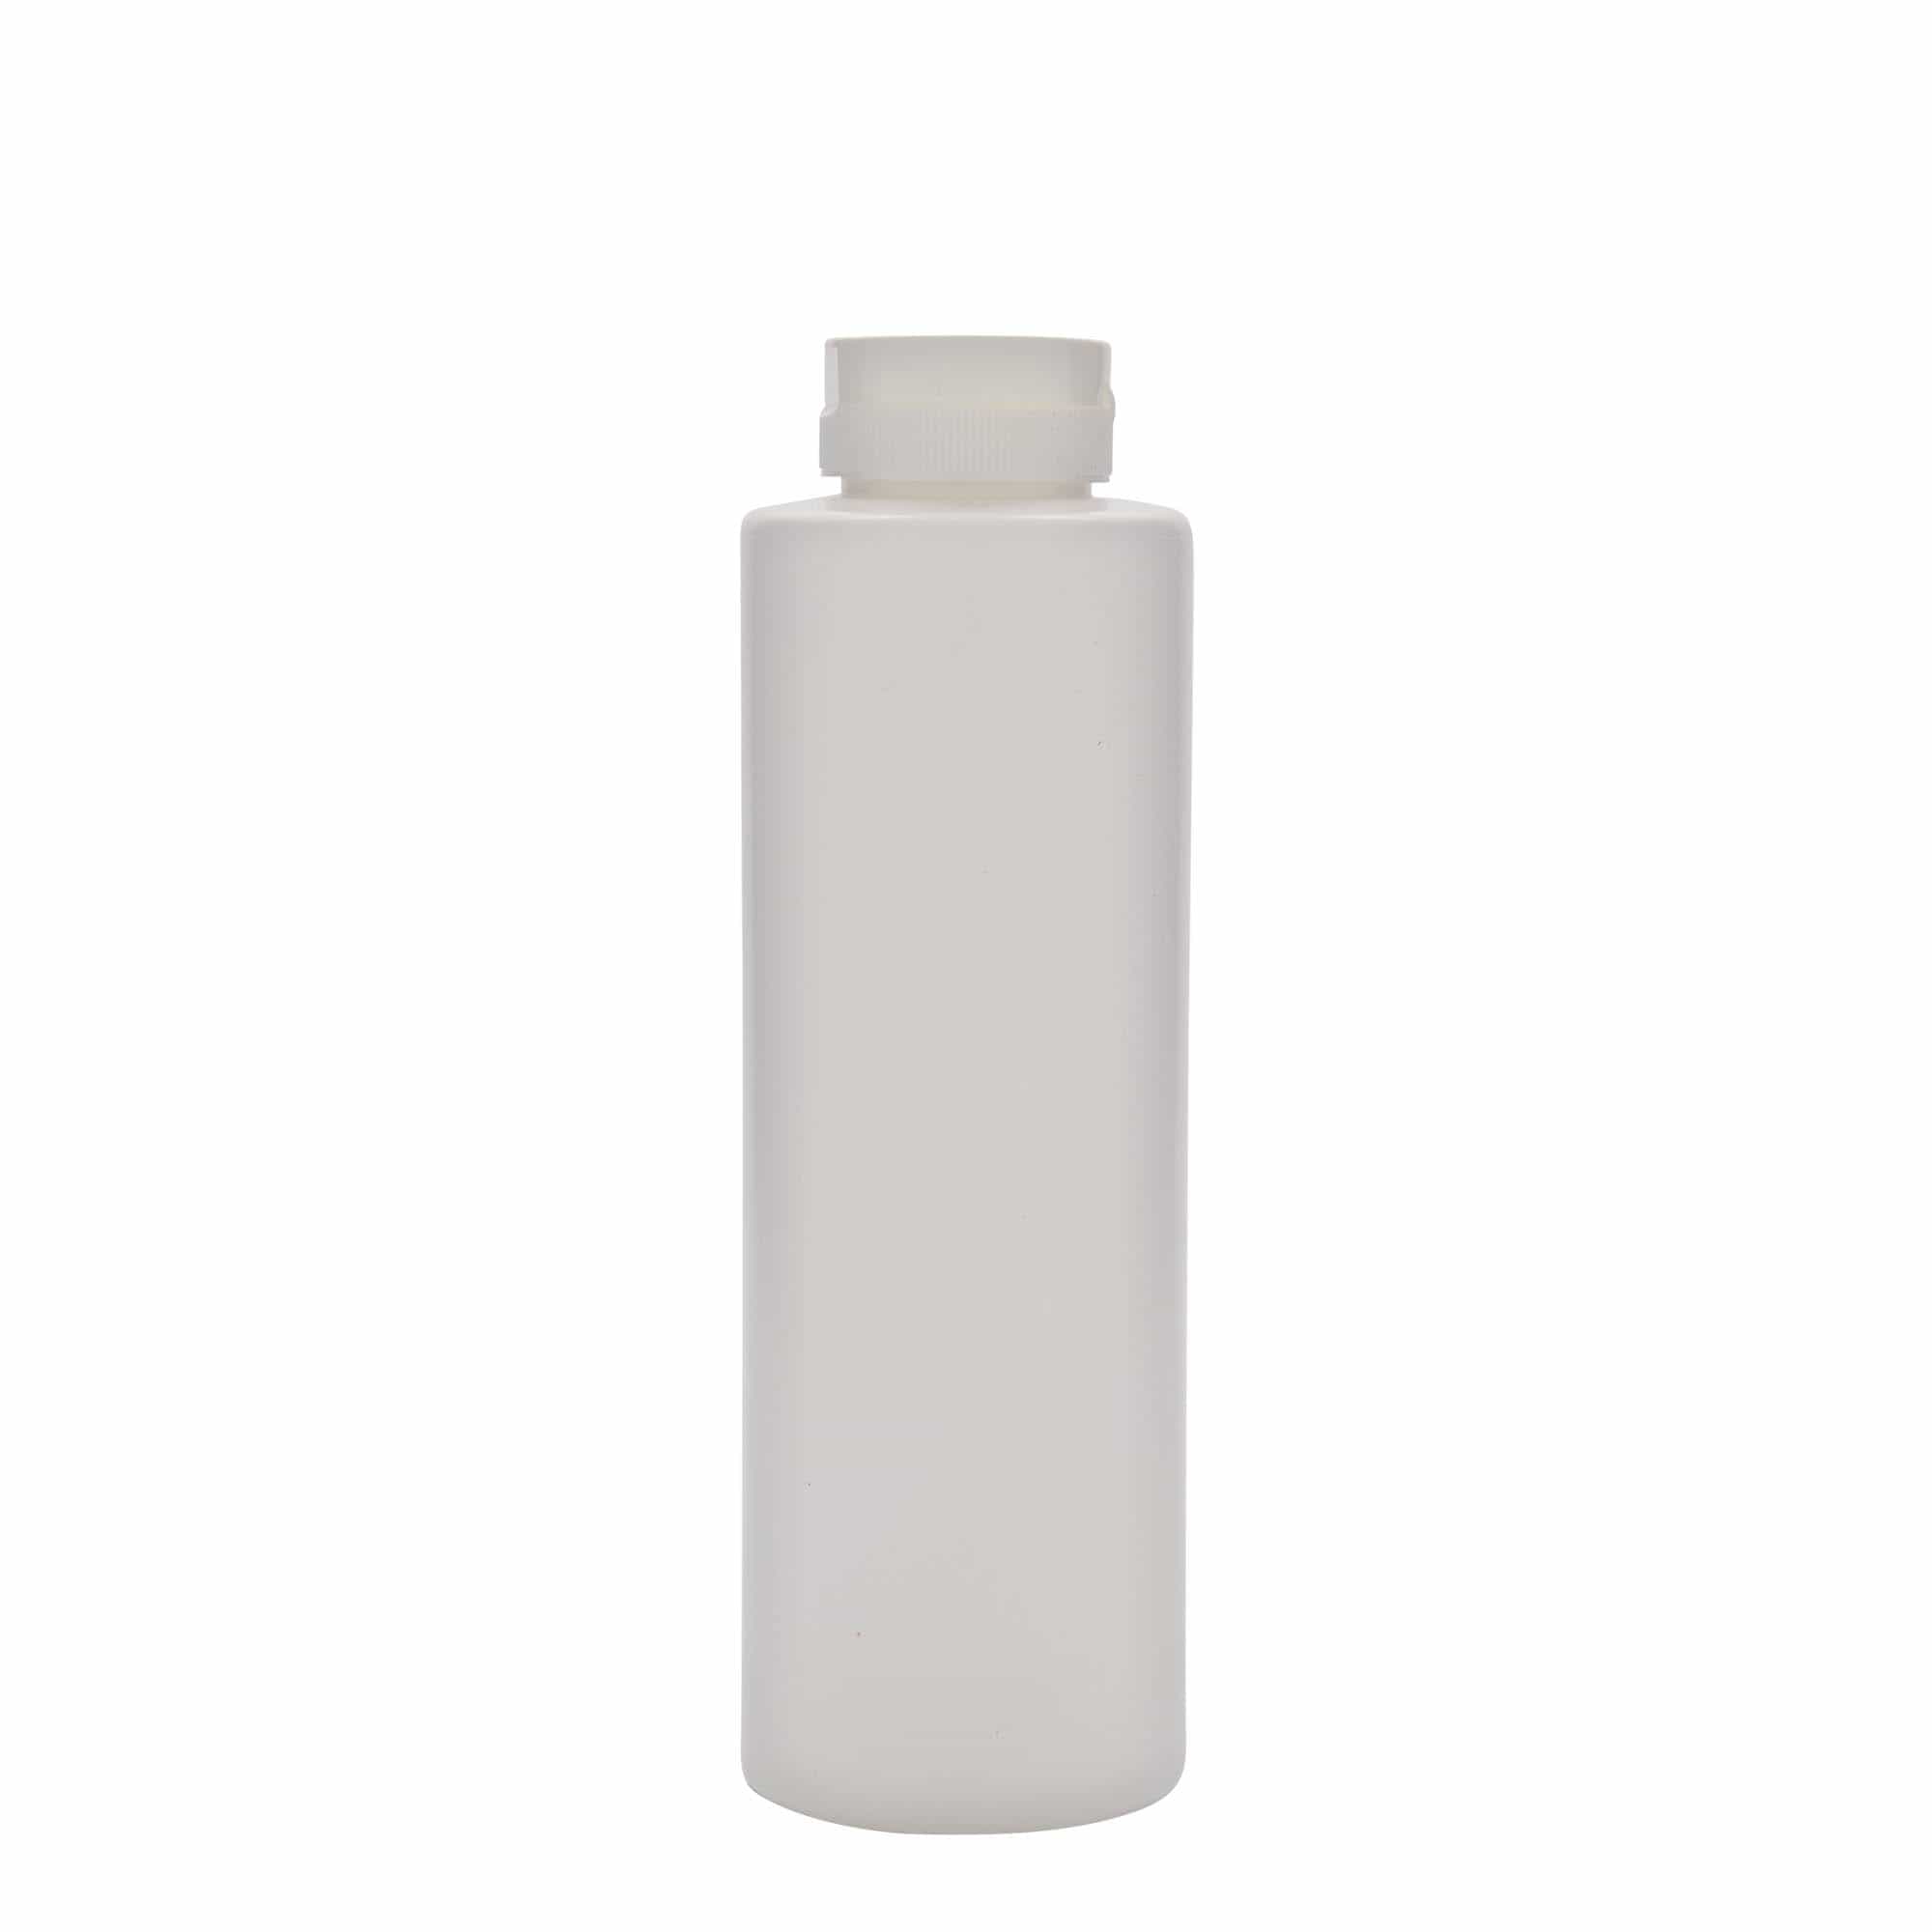 500 ml butelka na sos, tworzywo sztuczne LDPE, kolor biały, zamknięcie: GPI 38/400